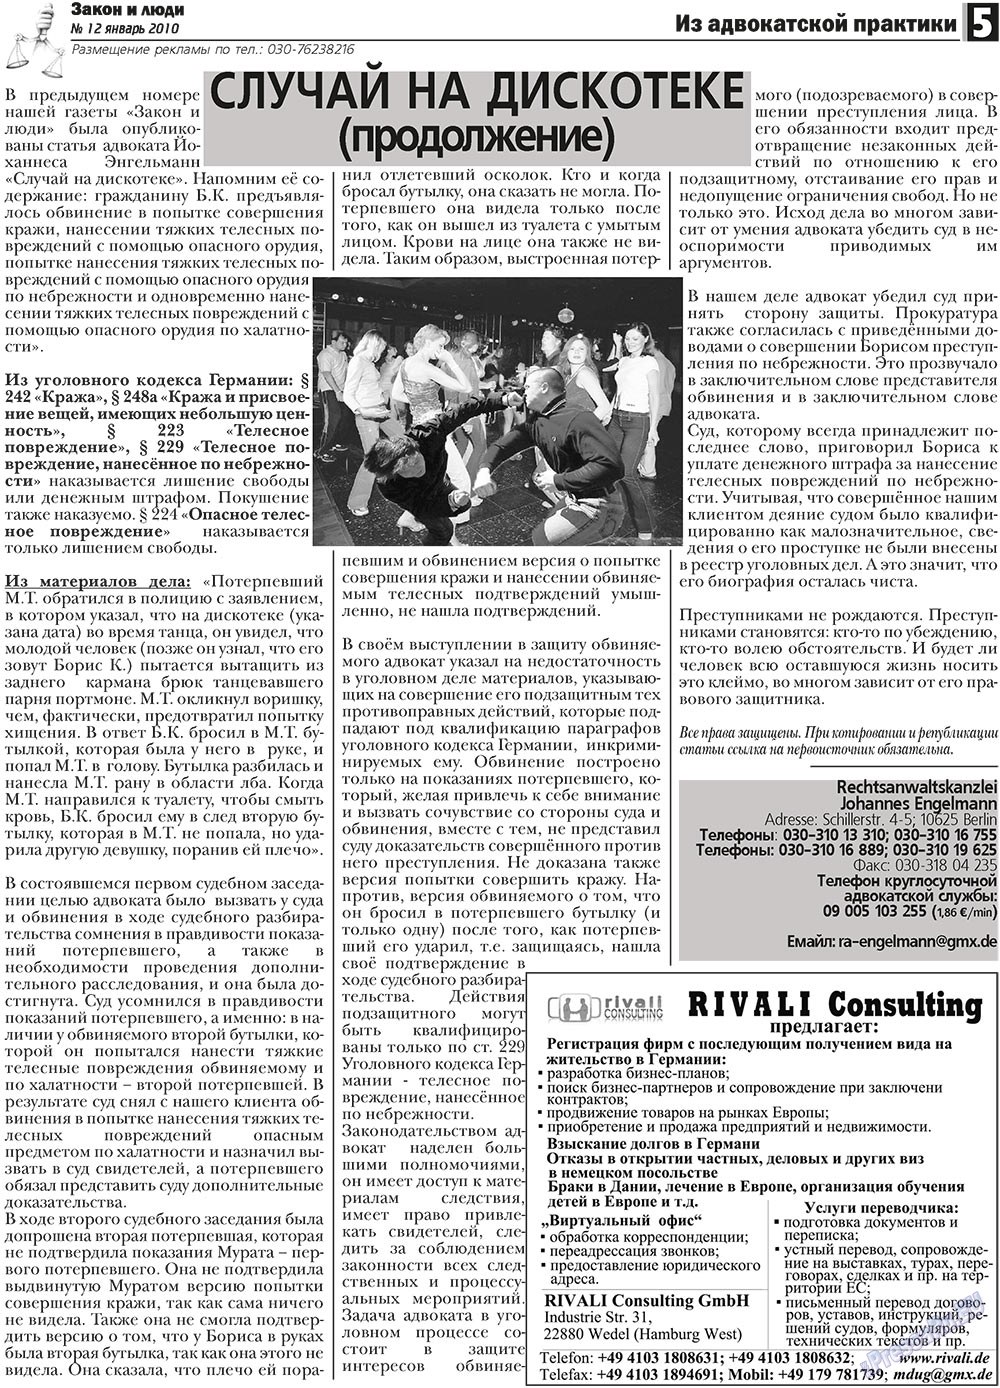 Закон и люди, газета. 2011 №1 стр.5